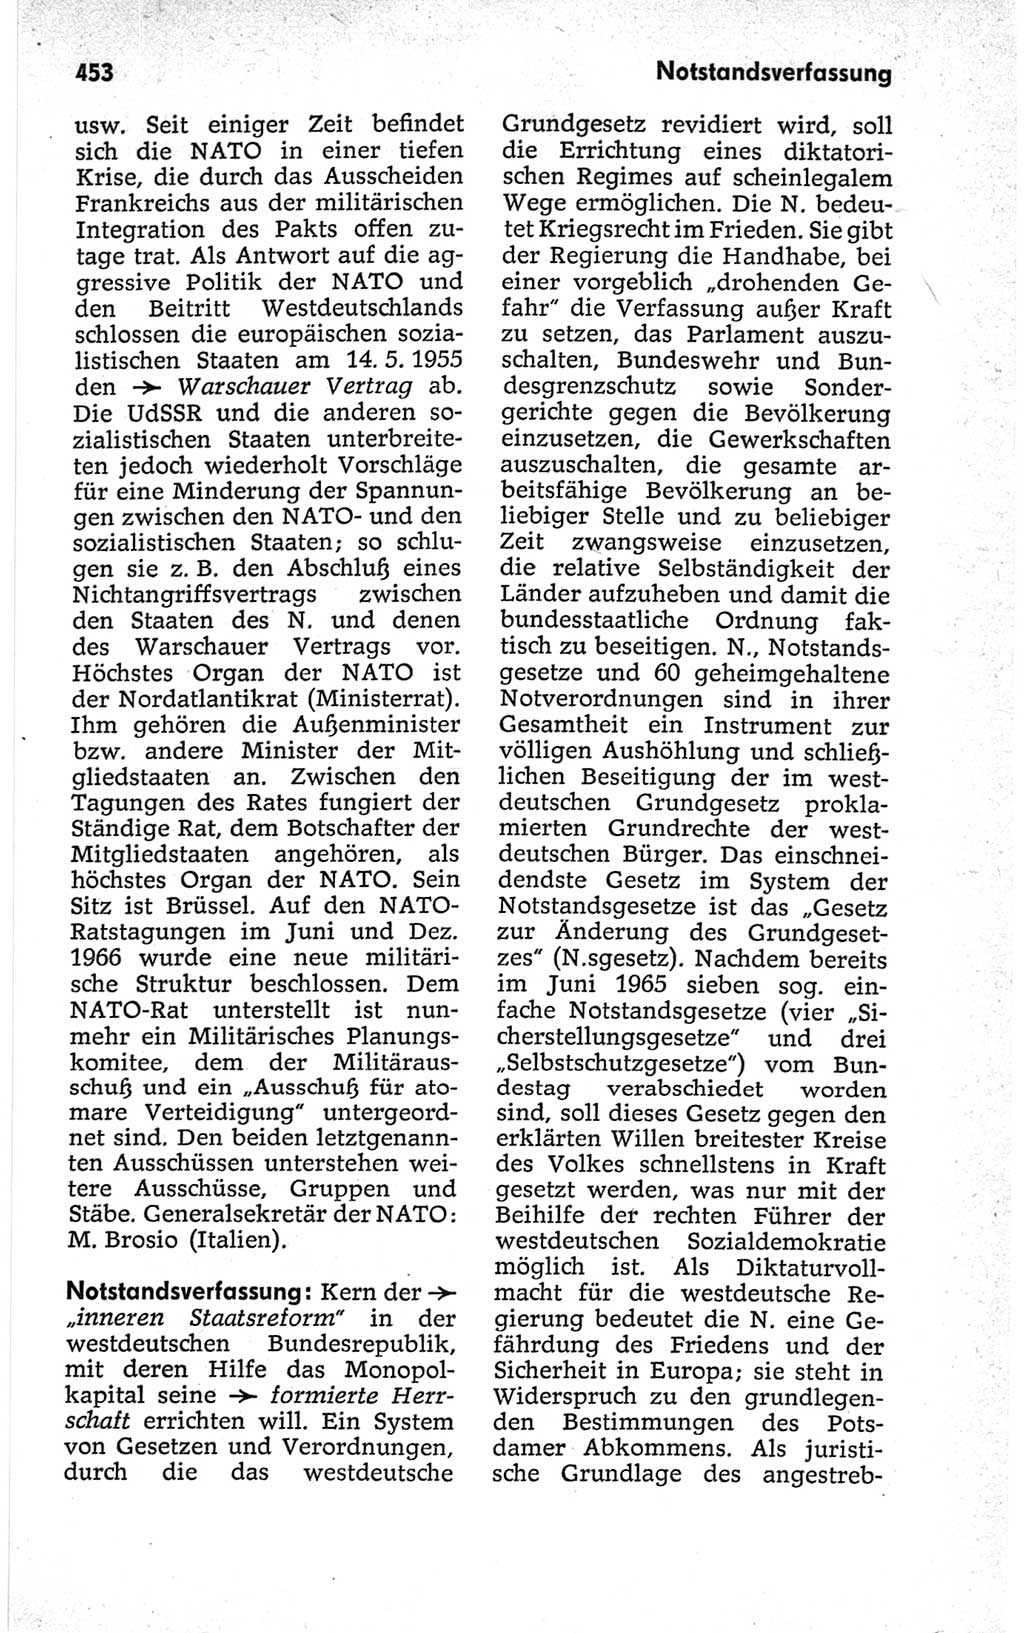 Kleines politisches Wörterbuch [Deutsche Demokratische Republik (DDR)] 1967, Seite 453 (Kl. pol. Wb. DDR 1967, S. 453)